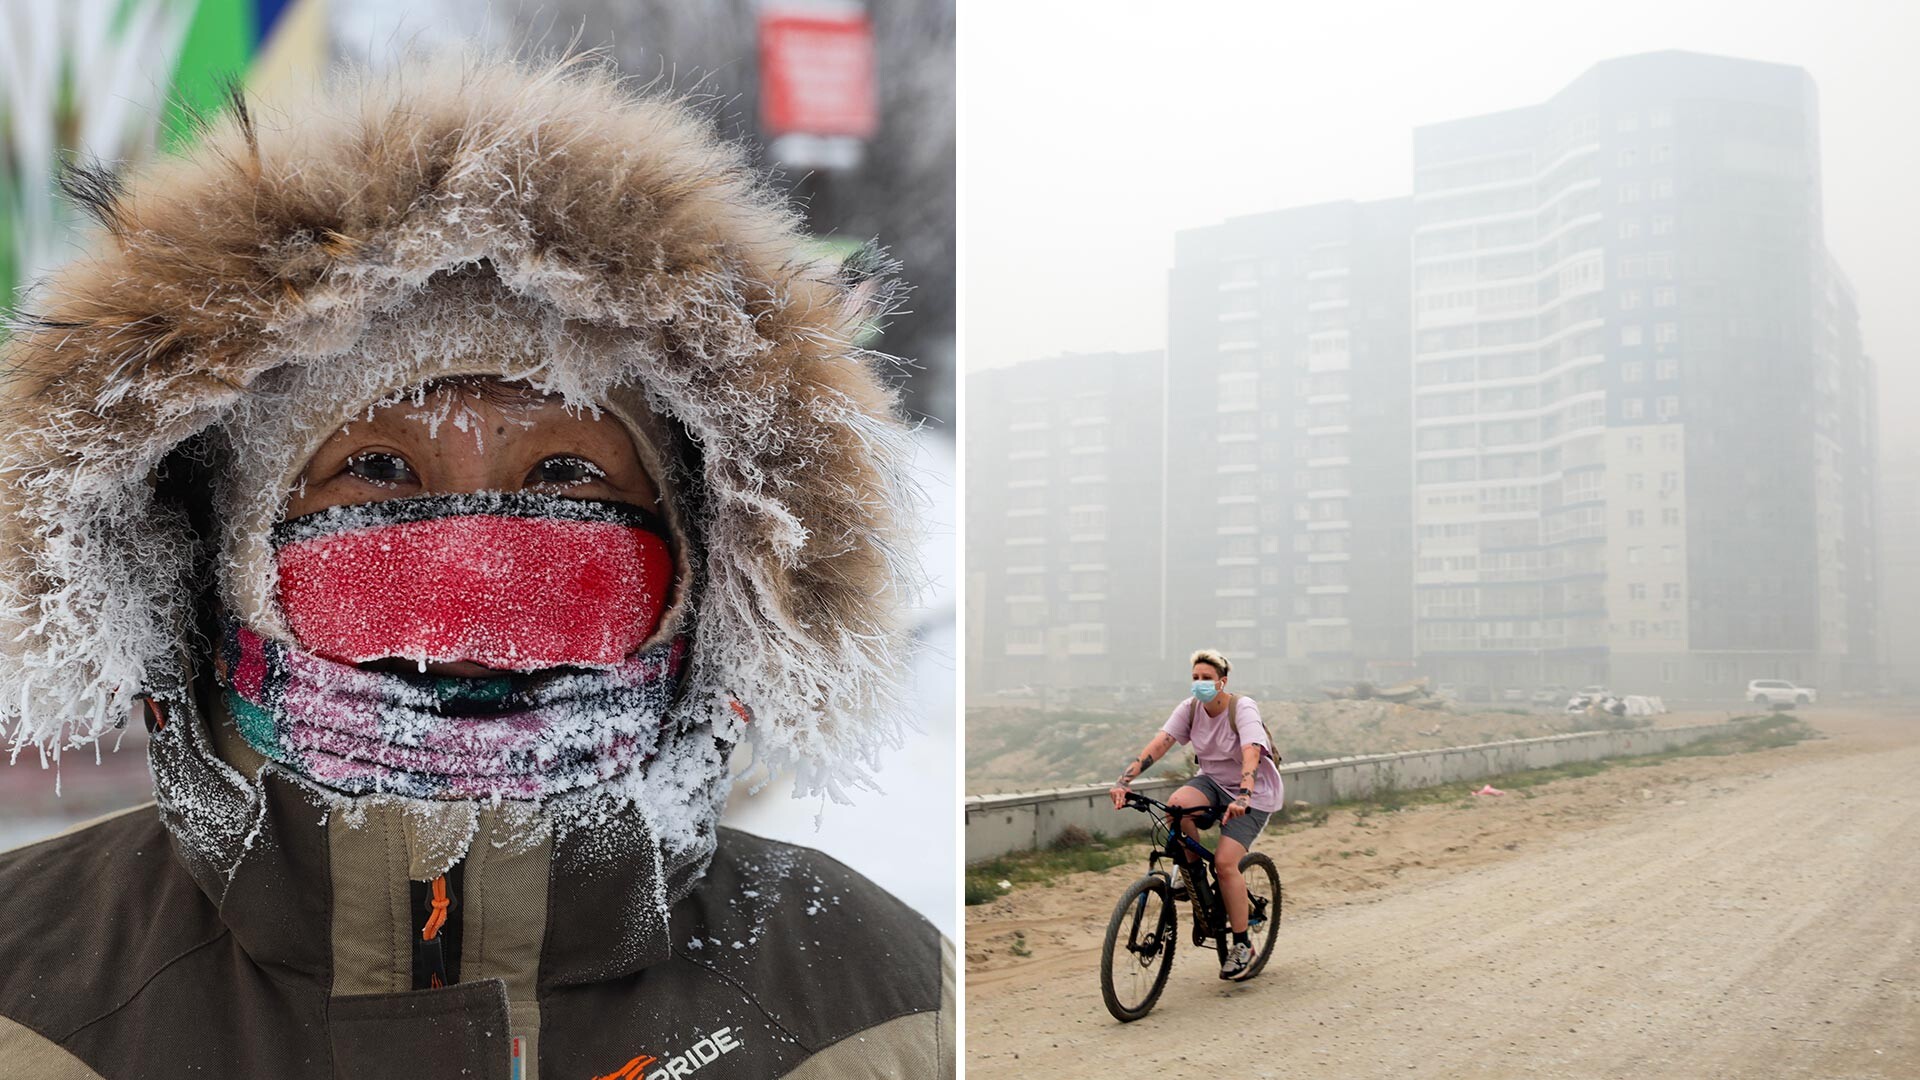 Izquierda: octubre en Yakutia, a unos 45 grados bajo cero en el exterior. Derecha: Verano en Yakutia.